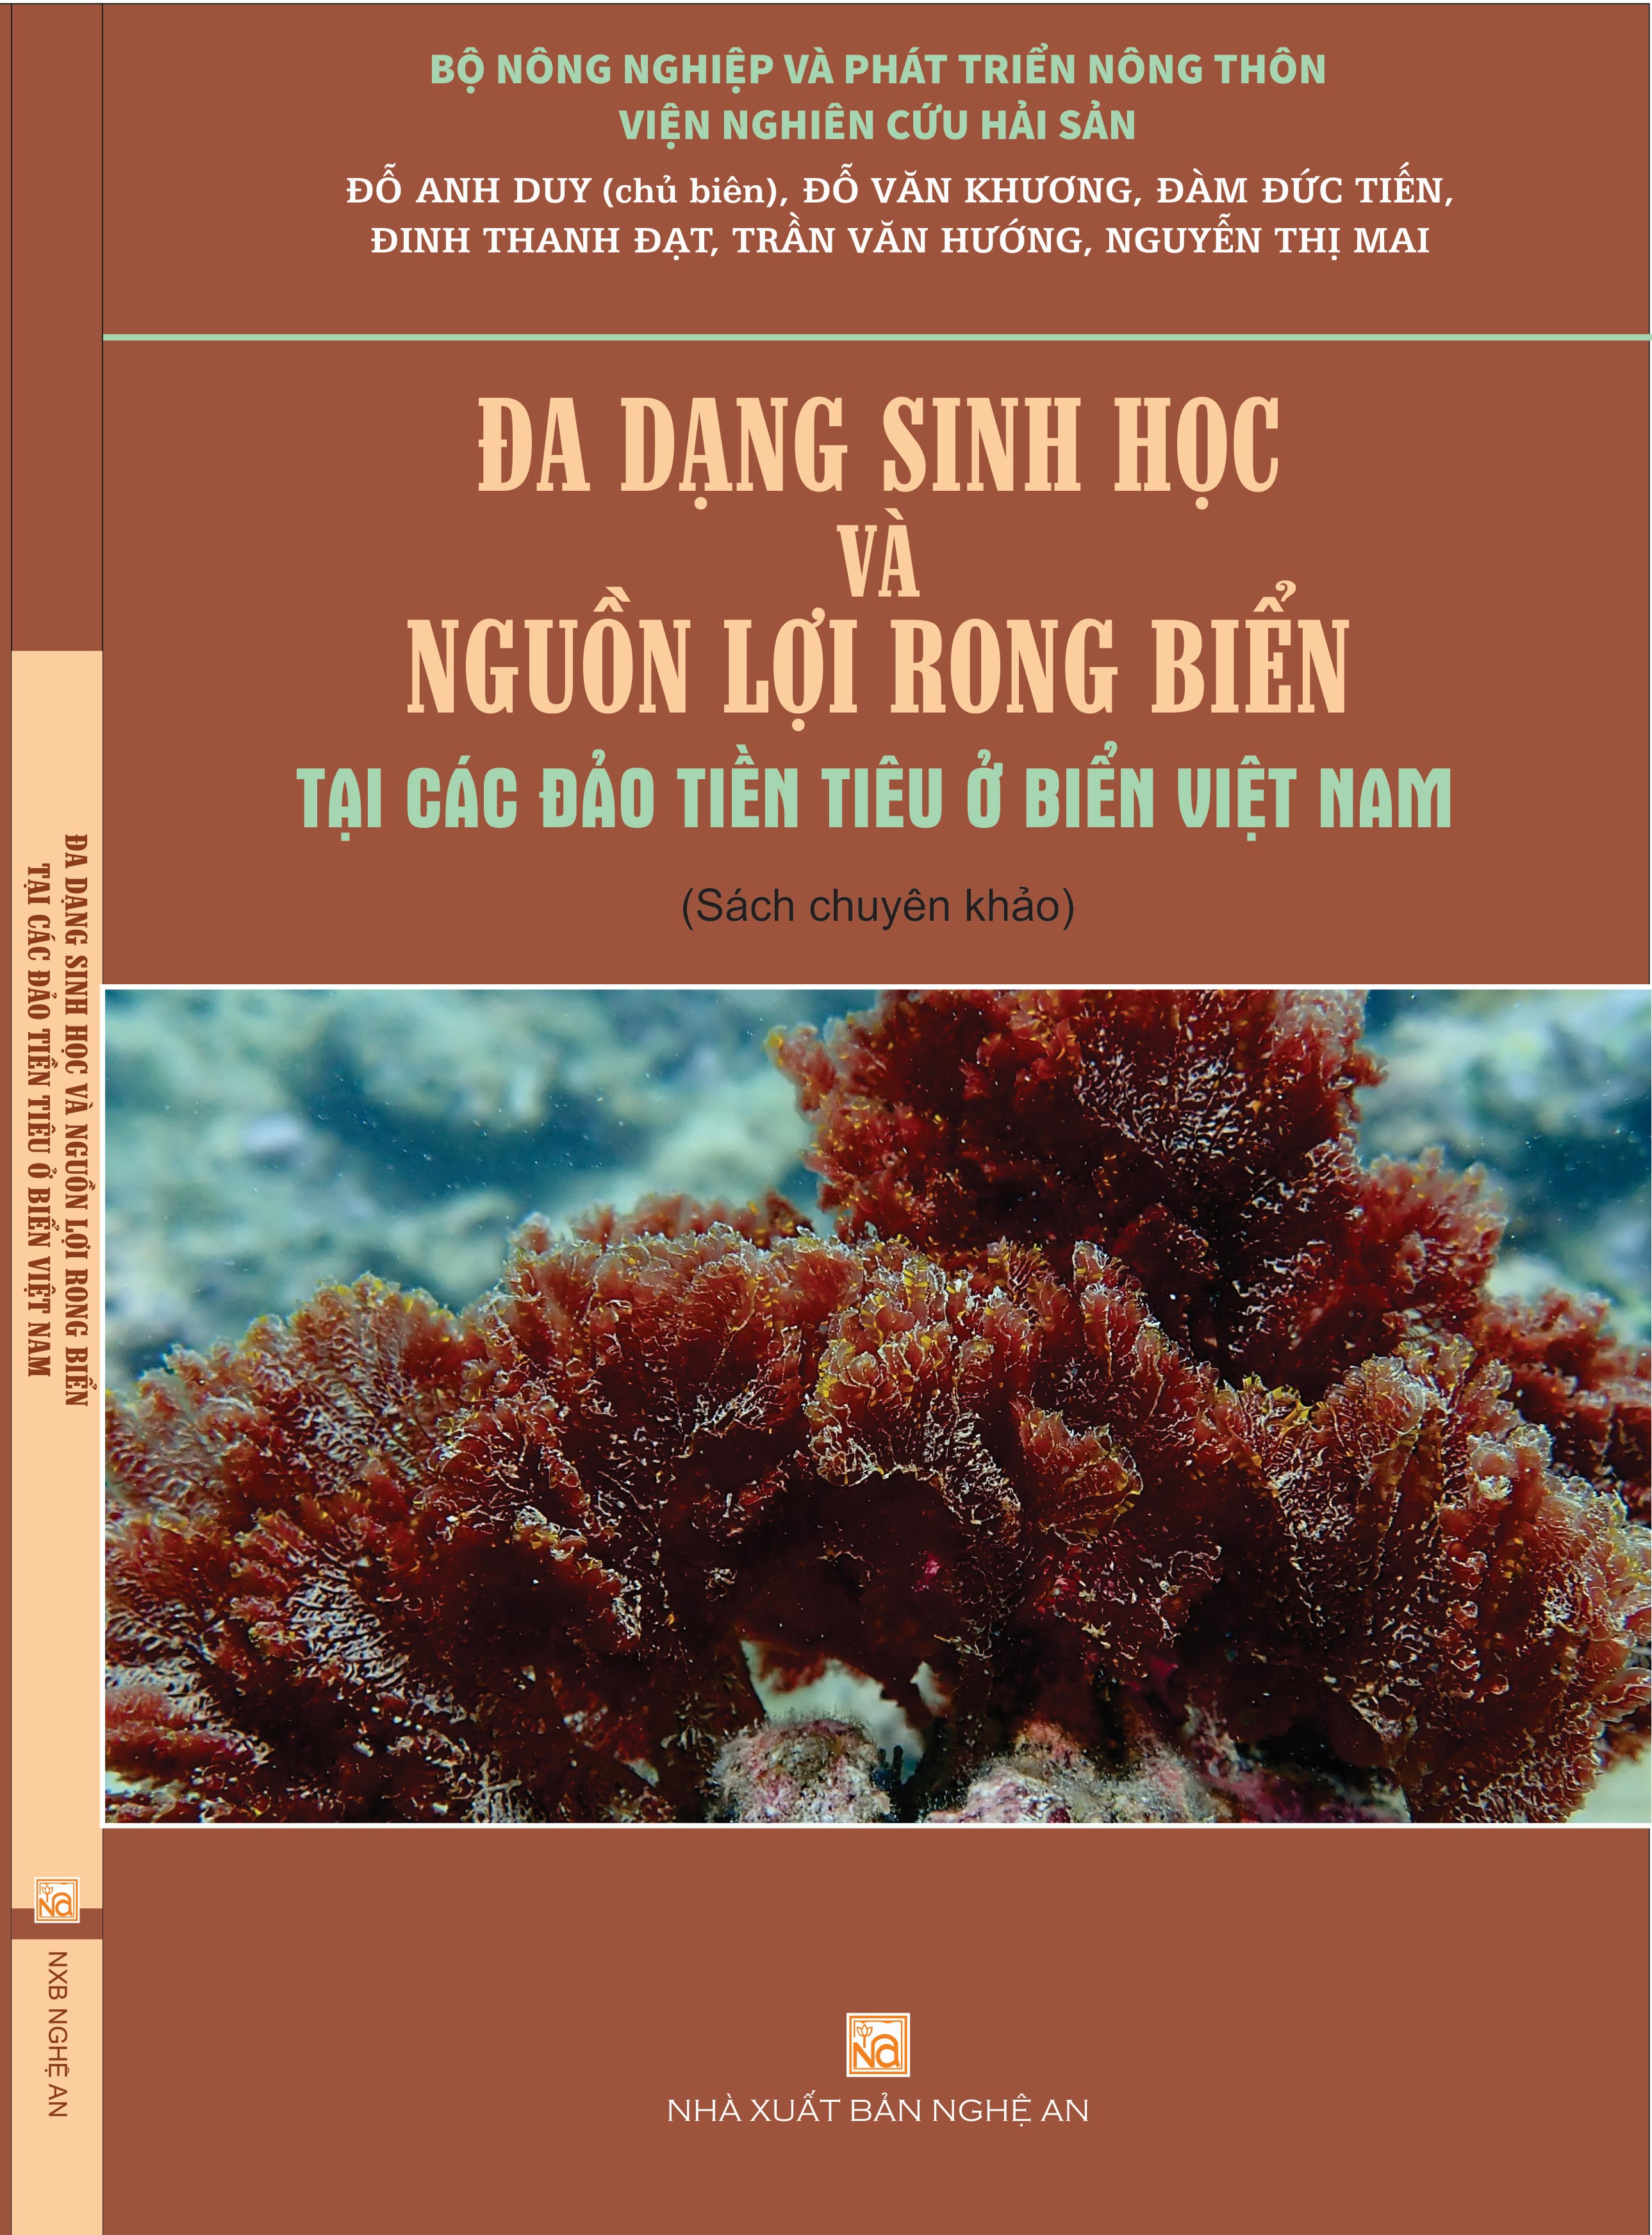 Đa dạng sinh học và nguồn lợi rong biển tại các đảo tiền tiêu ở biển Việt Nam